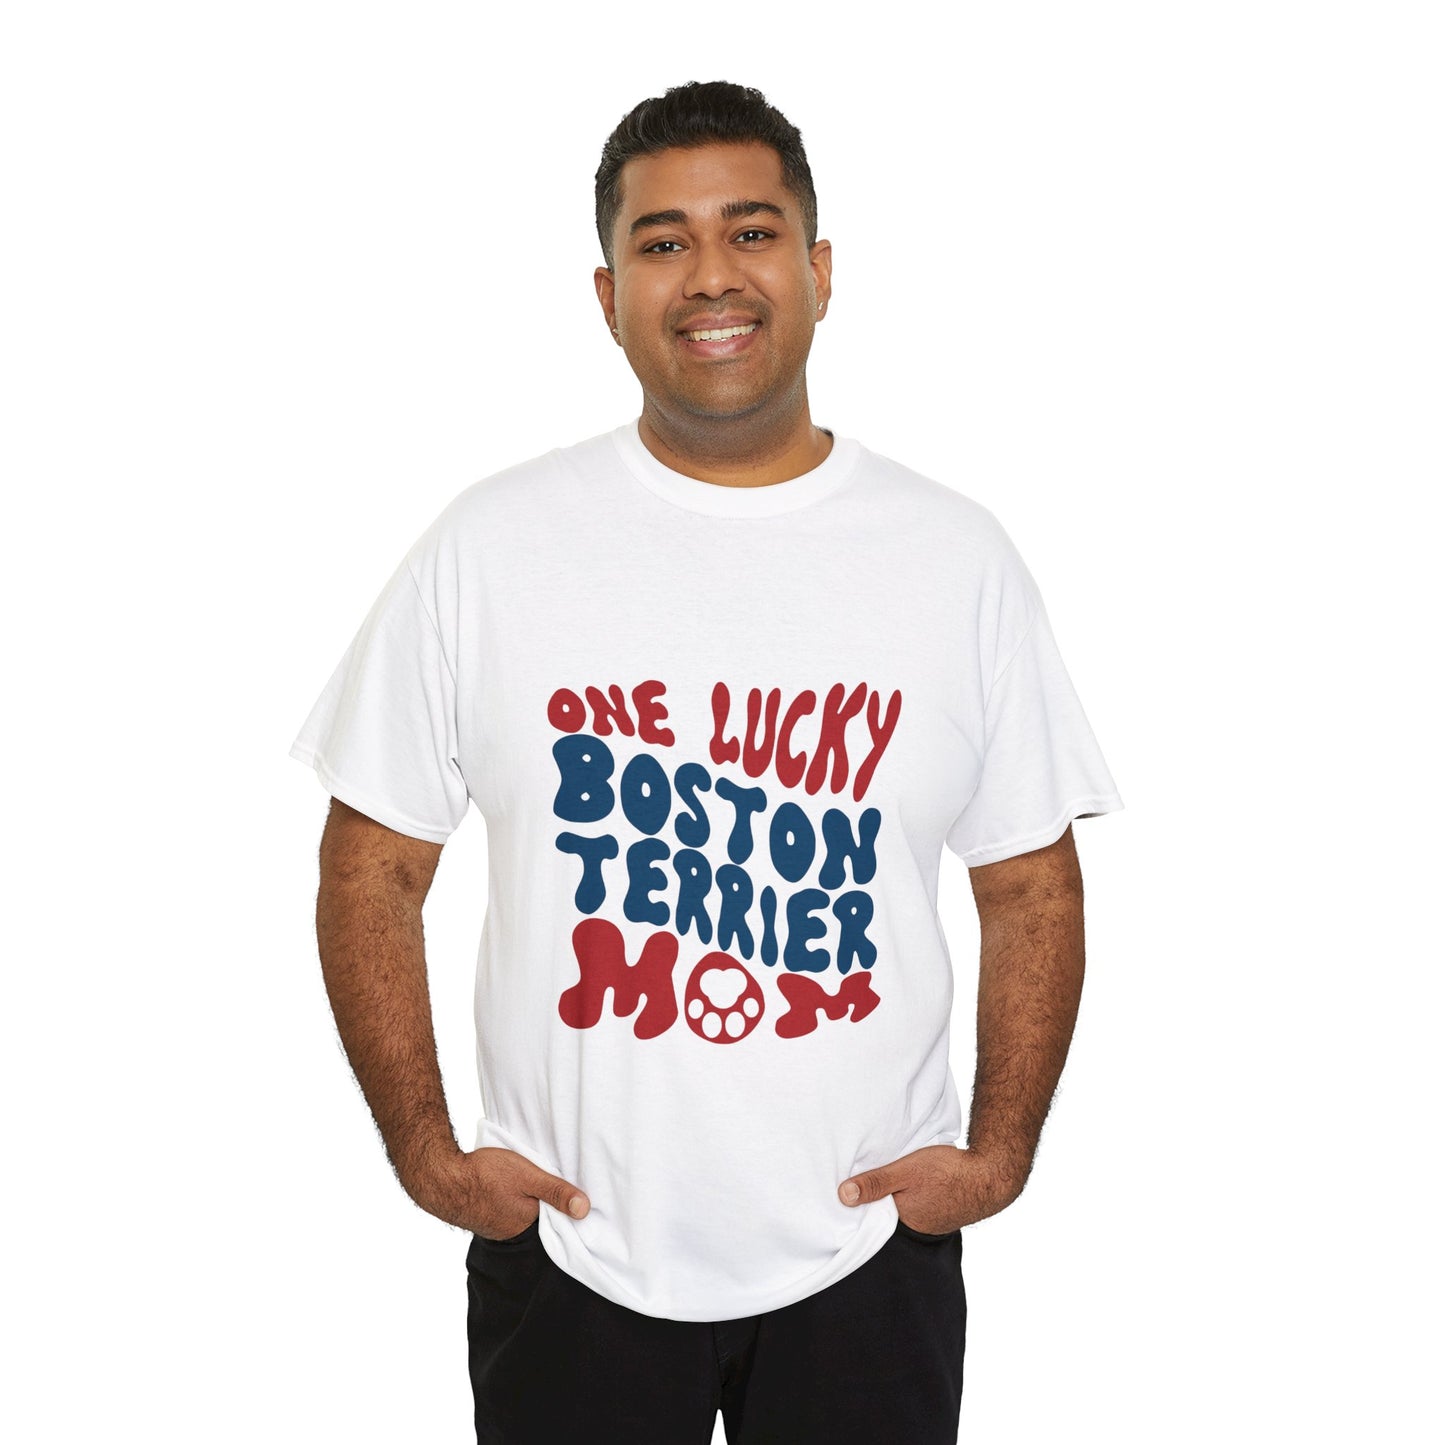 Rhett - Unisex Tshirts for Boston Terrier Lovers